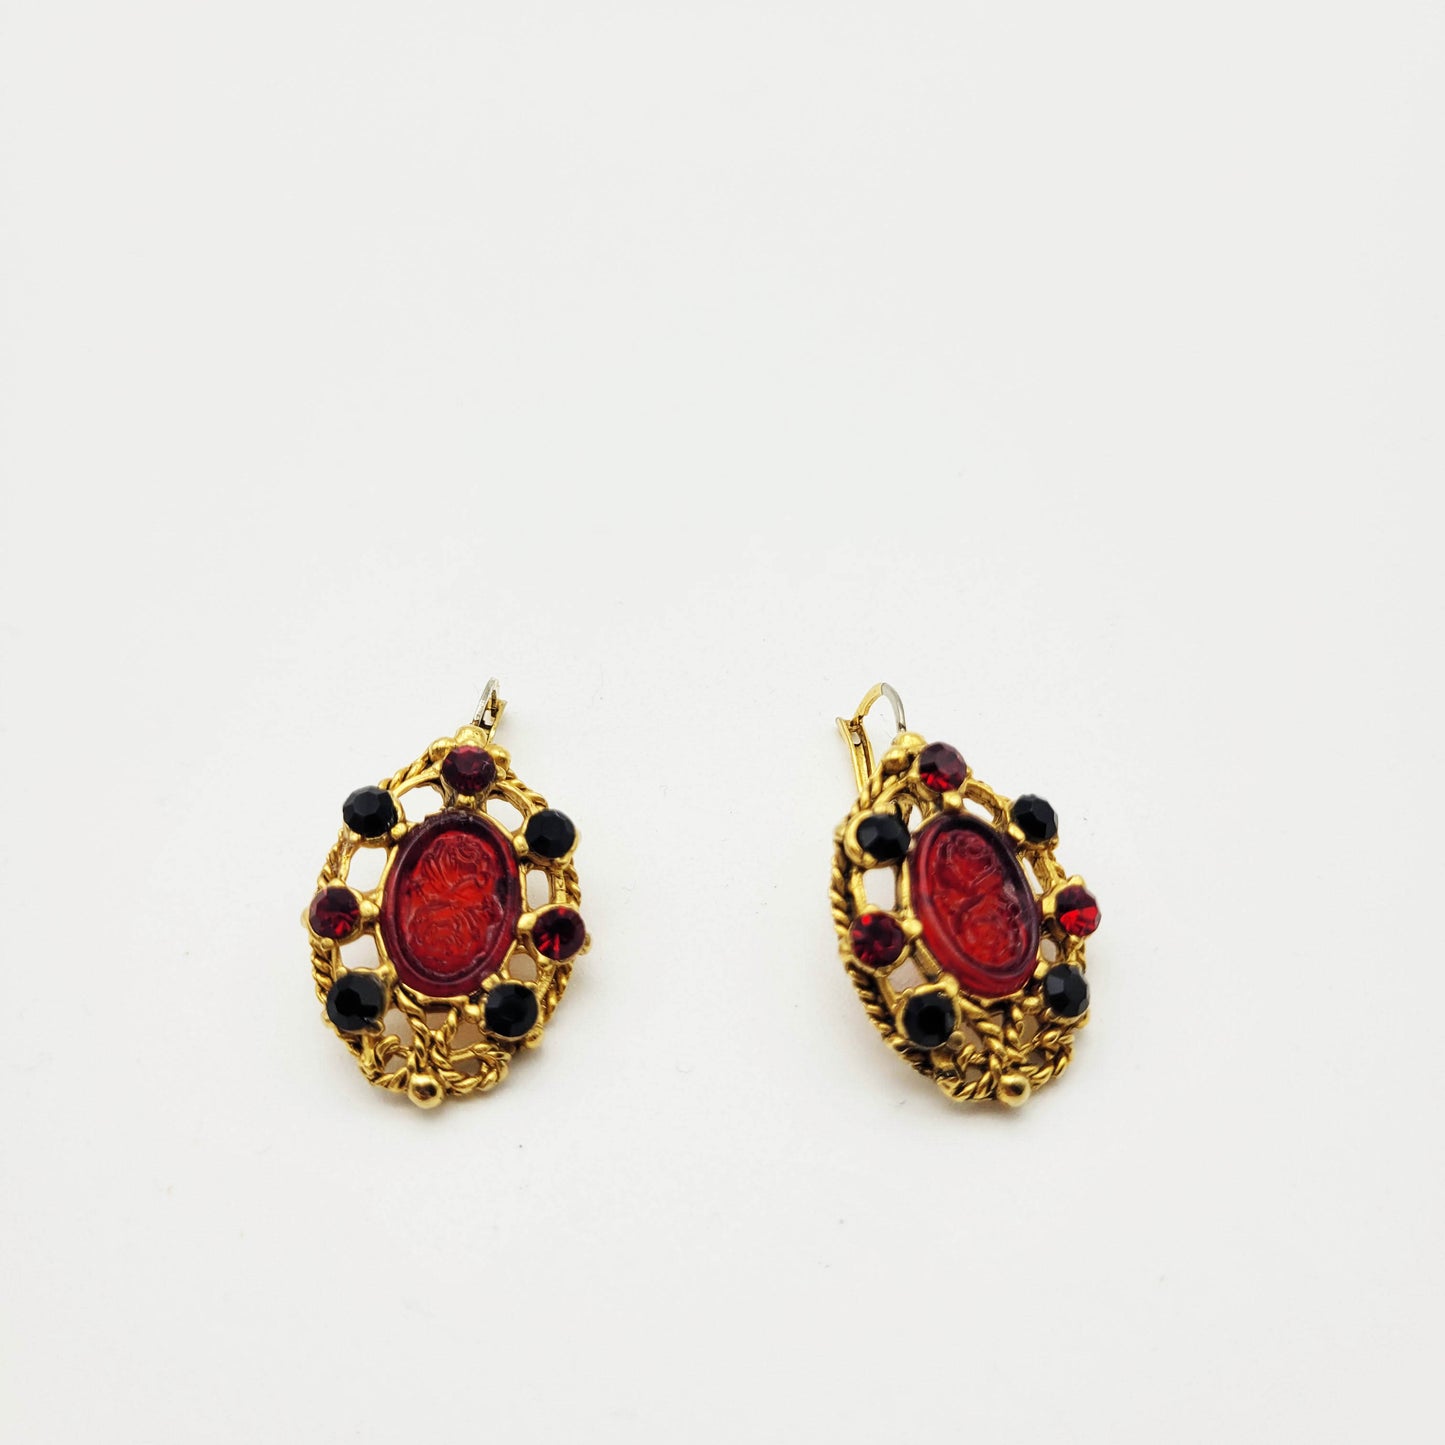 Vintage red oval earrings